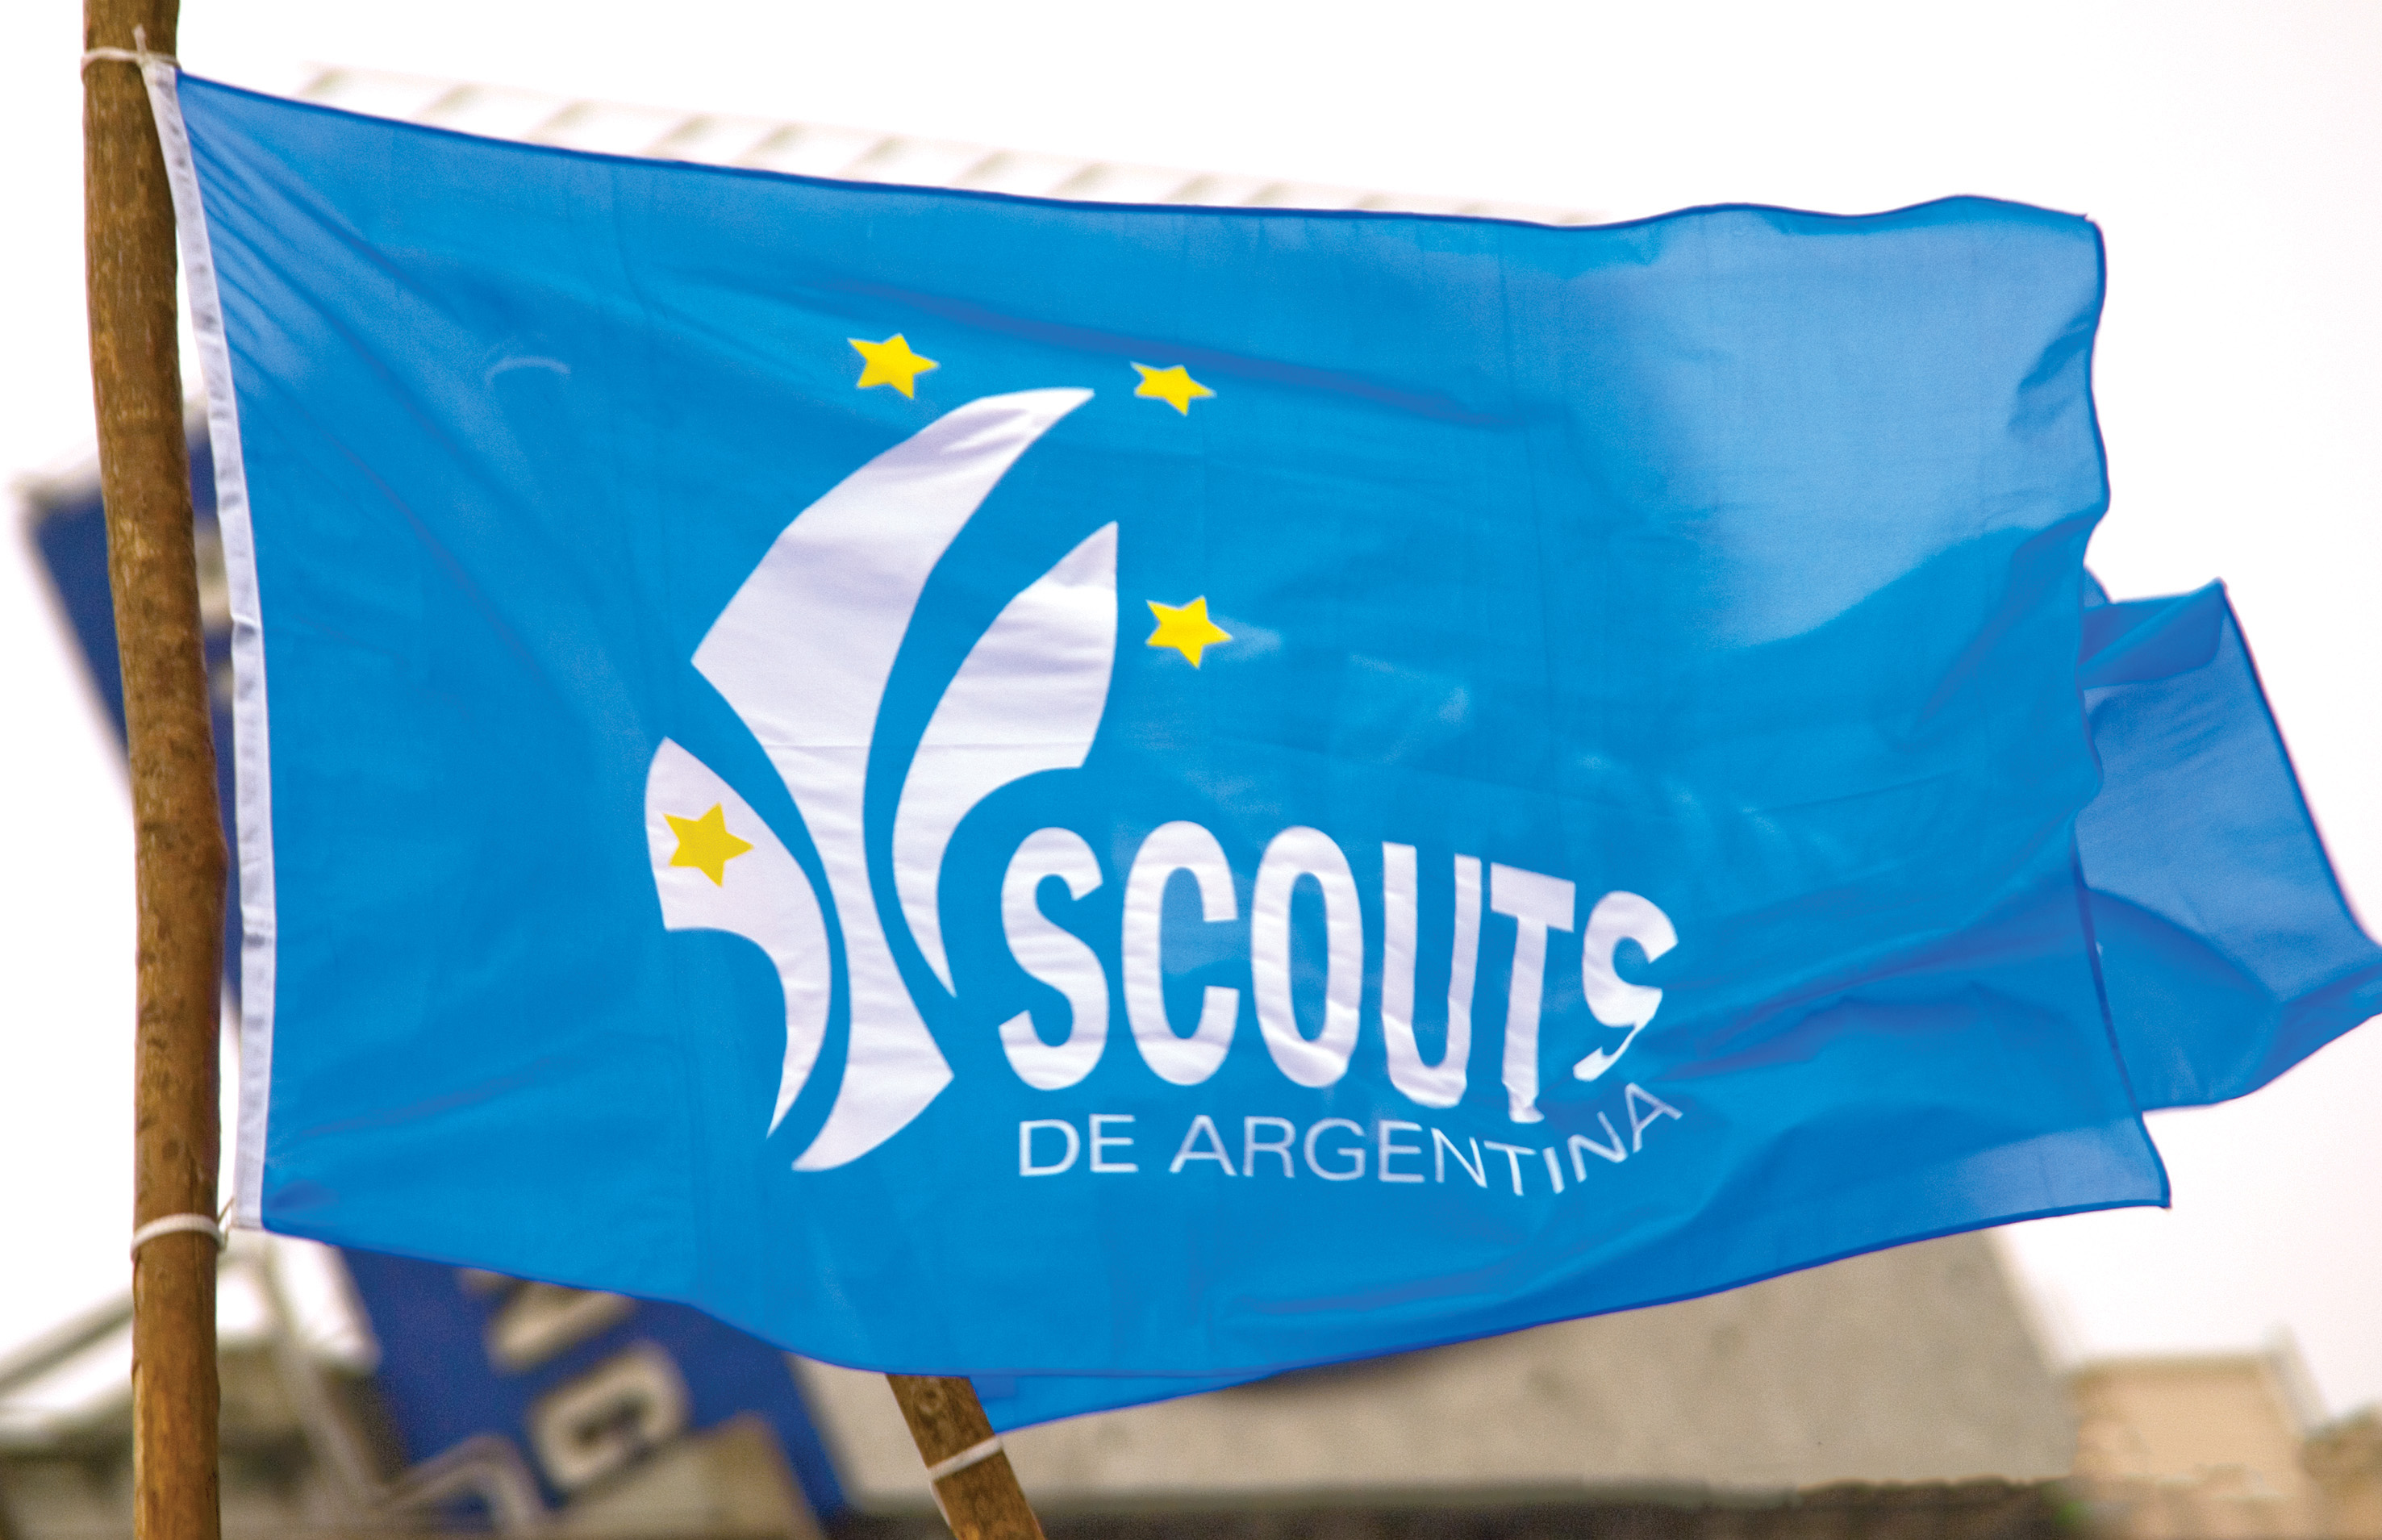 BanderaScout – Scouts de Argentina